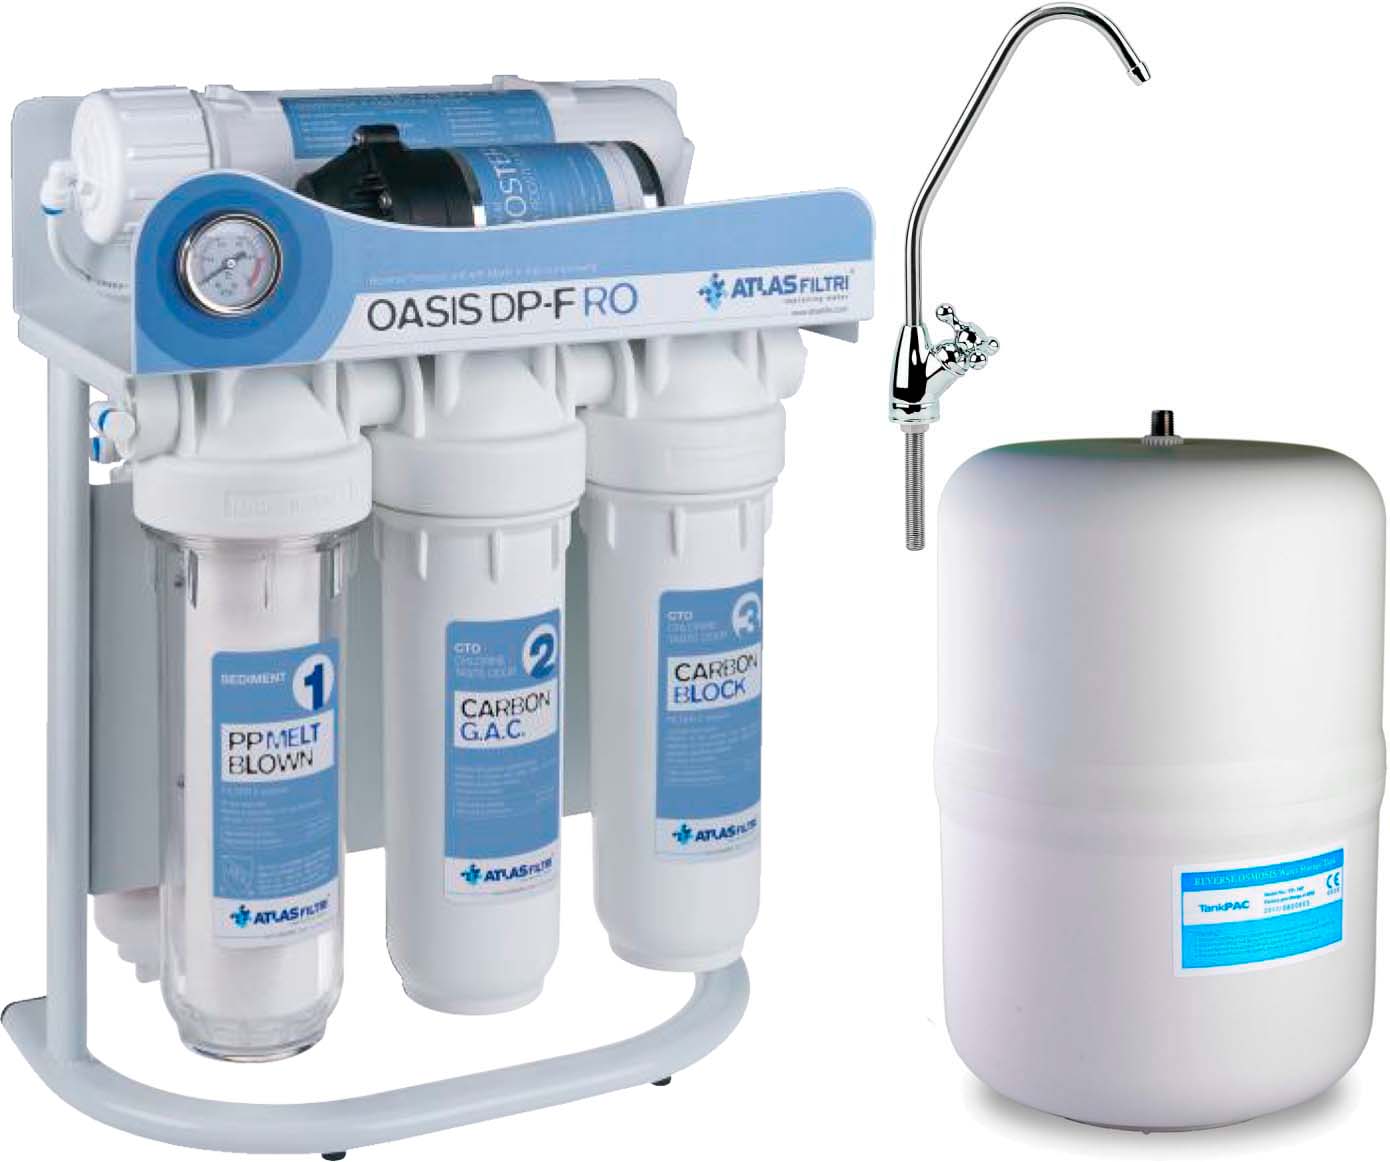 Фильтр для воды Atlas Filtri Oasis DP-F PUMP (насос, минерализатор) с каркасом RE6075350